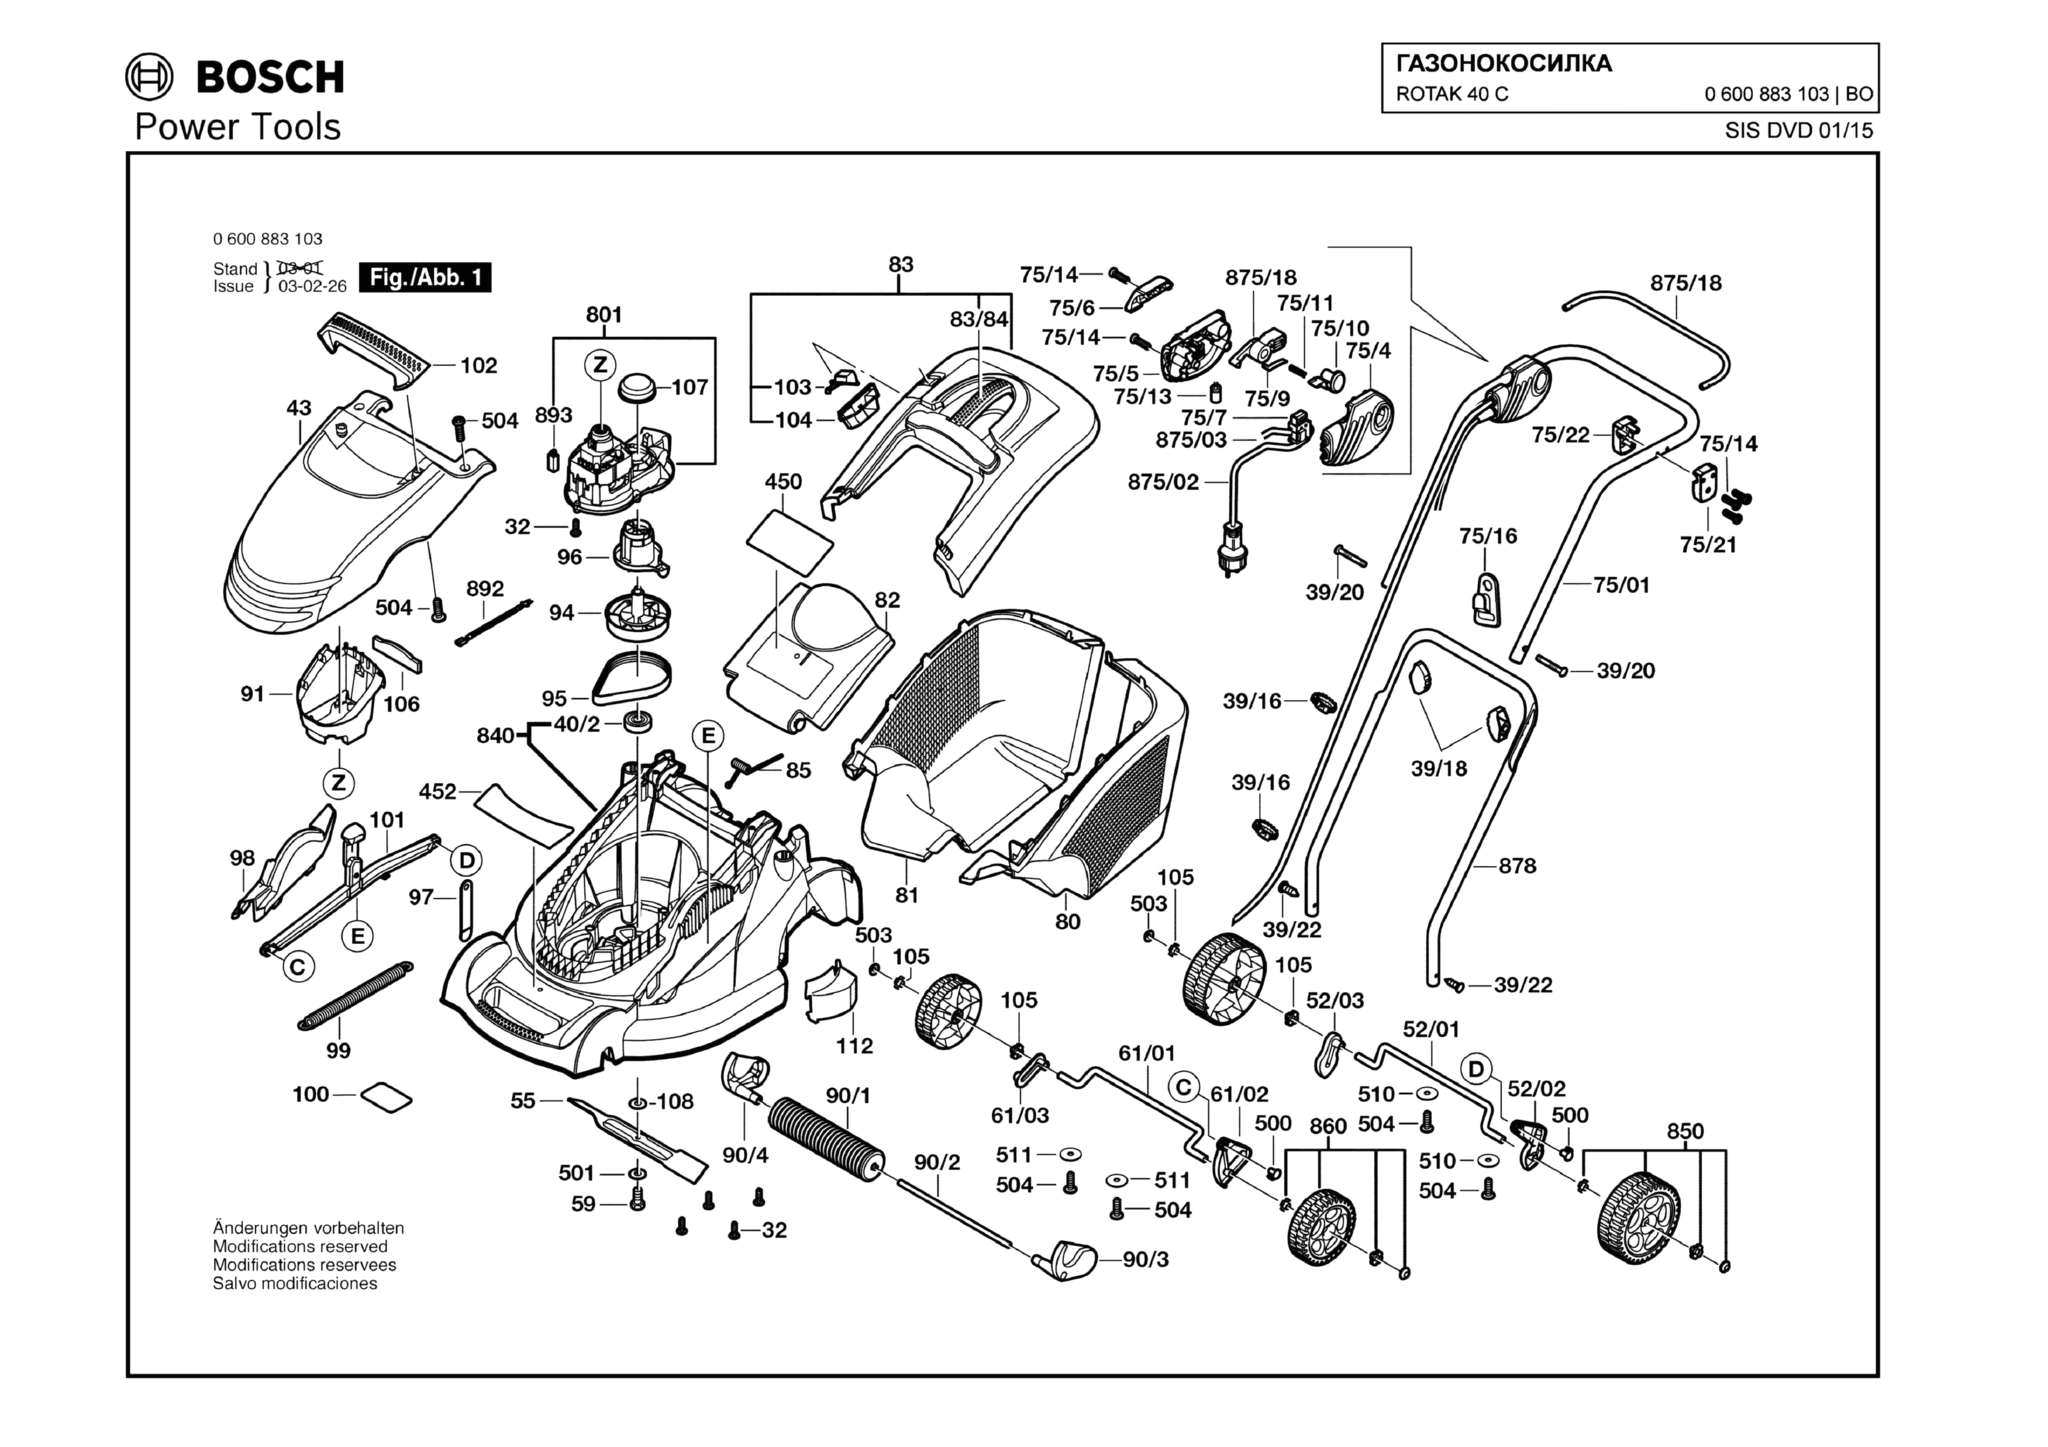 Запчасти, схема и деталировка Bosch ROTAK 40 C (ТИП 0600883103)